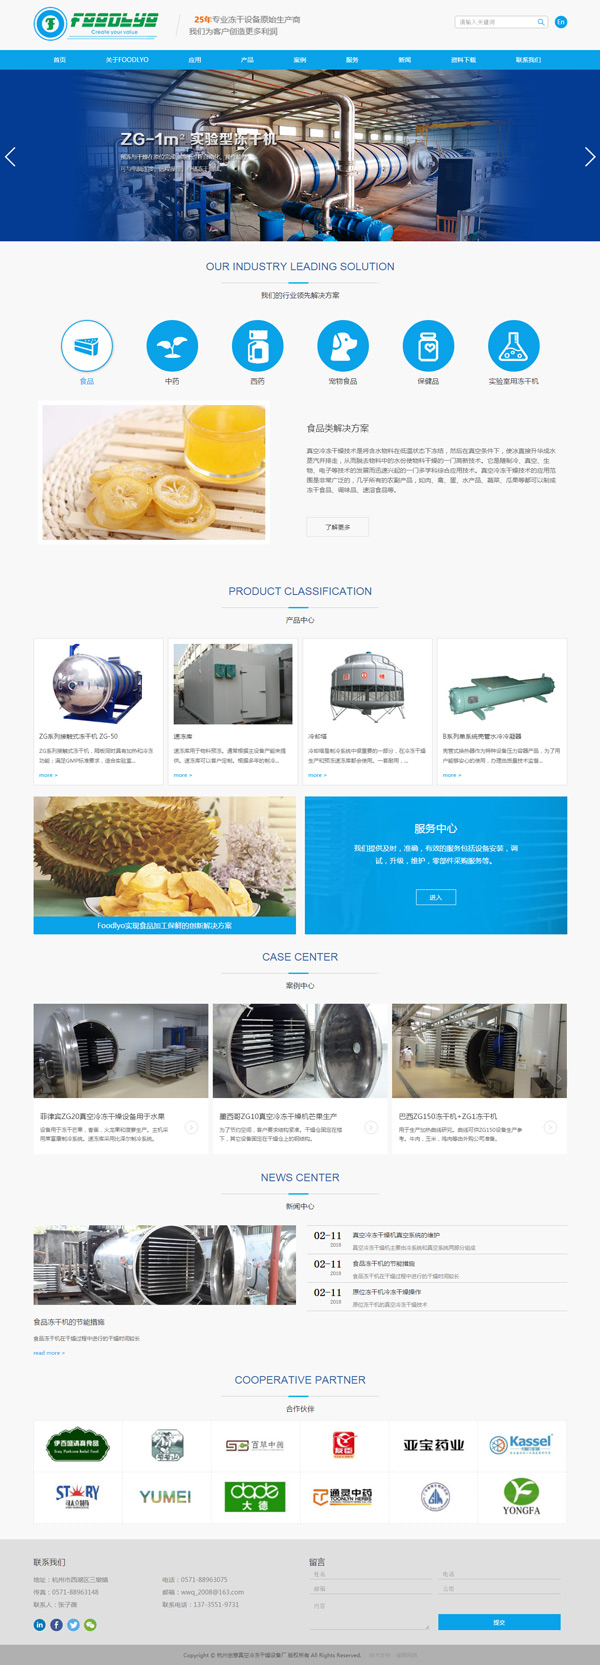 杭州创意真空冷冻干燥设备厂321.jpg